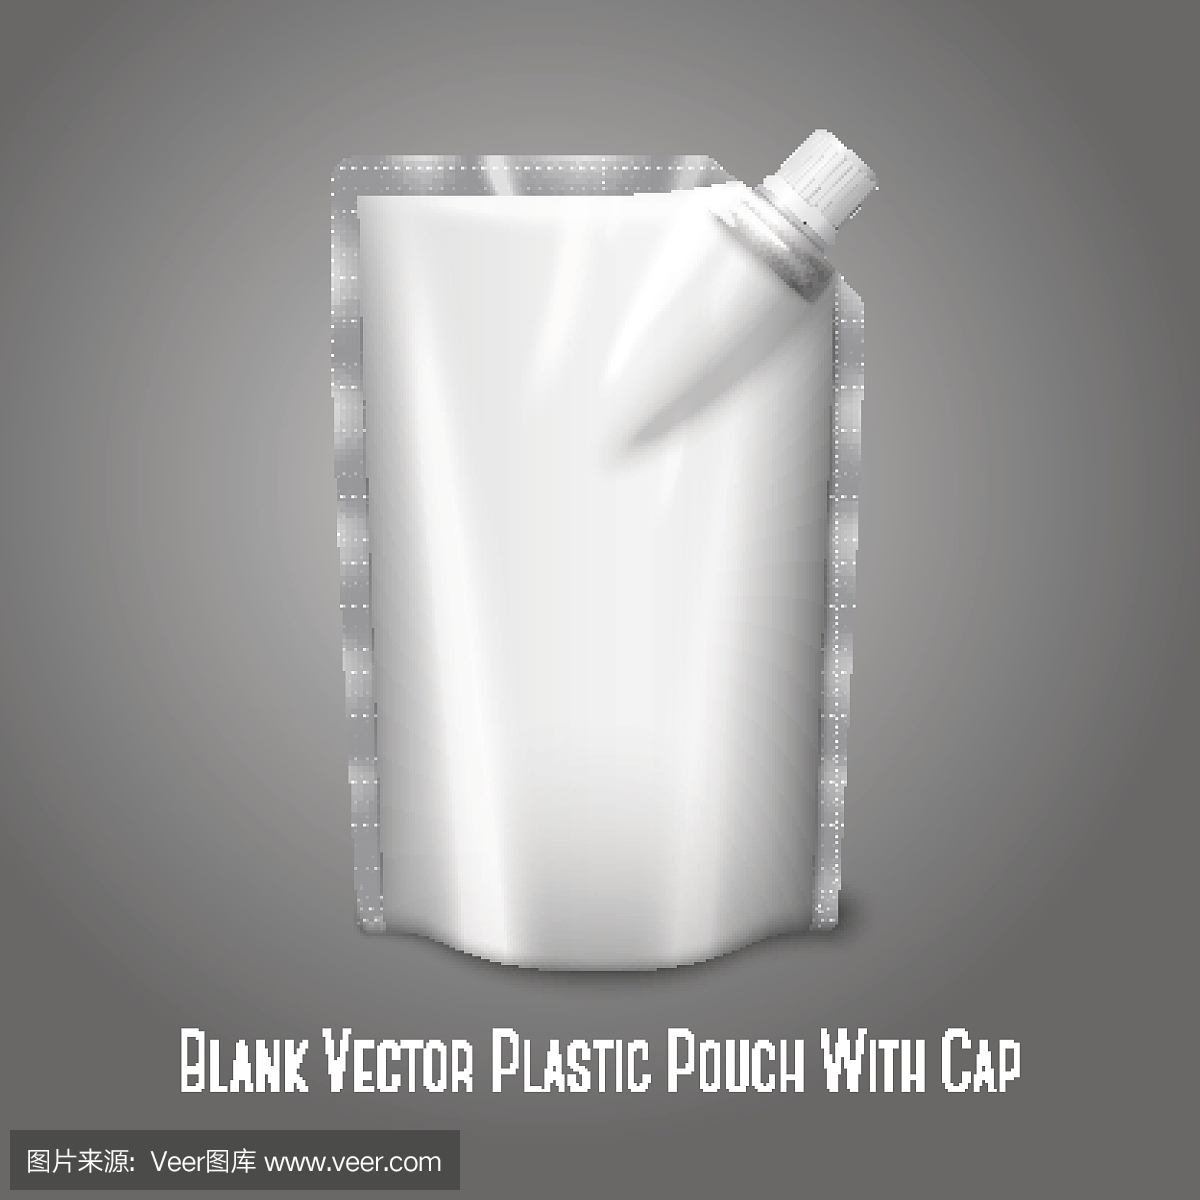 空白的白色现实塑料袋与帽子,隔绝在灰色